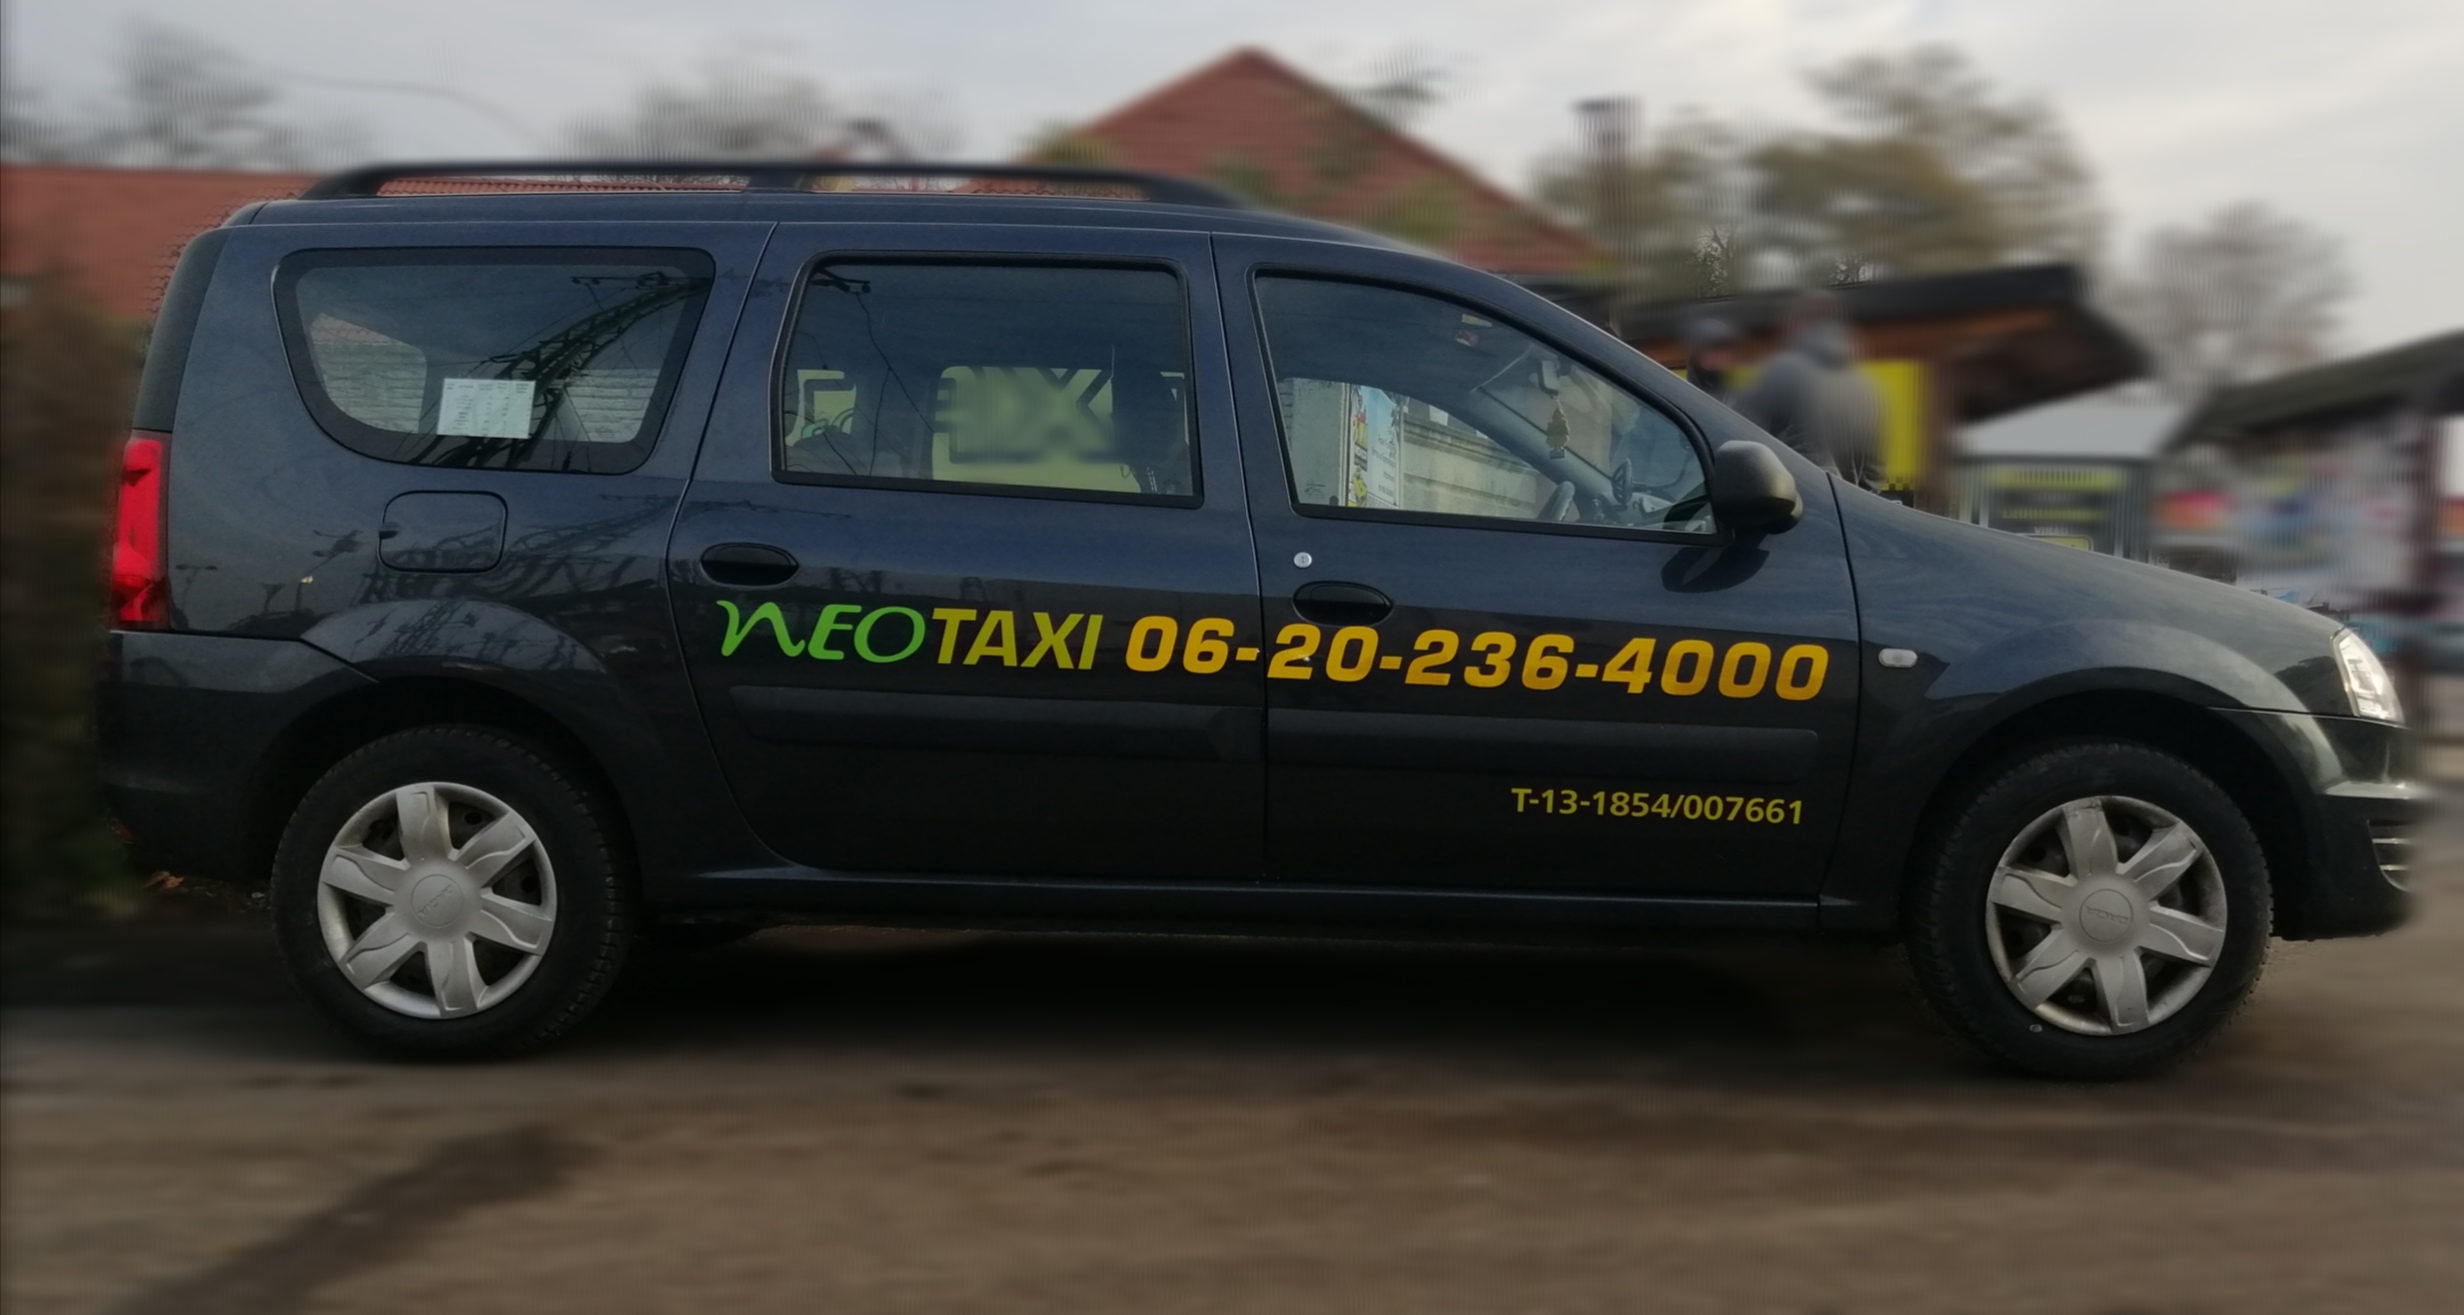 taxi, neo taxi,neo taxi monor, monor neo taxi, taxiszolgáltatás, taxi gyömrő, gyömrő, gyömrői taxi, maglód, maglód taxi, péteri, péteri taxi, taximonor, monor, monor taxi, taxi monor, farkasd taxi ,üllő taxi, taxi gomba, taxi bénye, bénye taxi, csévharaszt taxi, bénye, virág taxi, Bali taxi, mary taxi